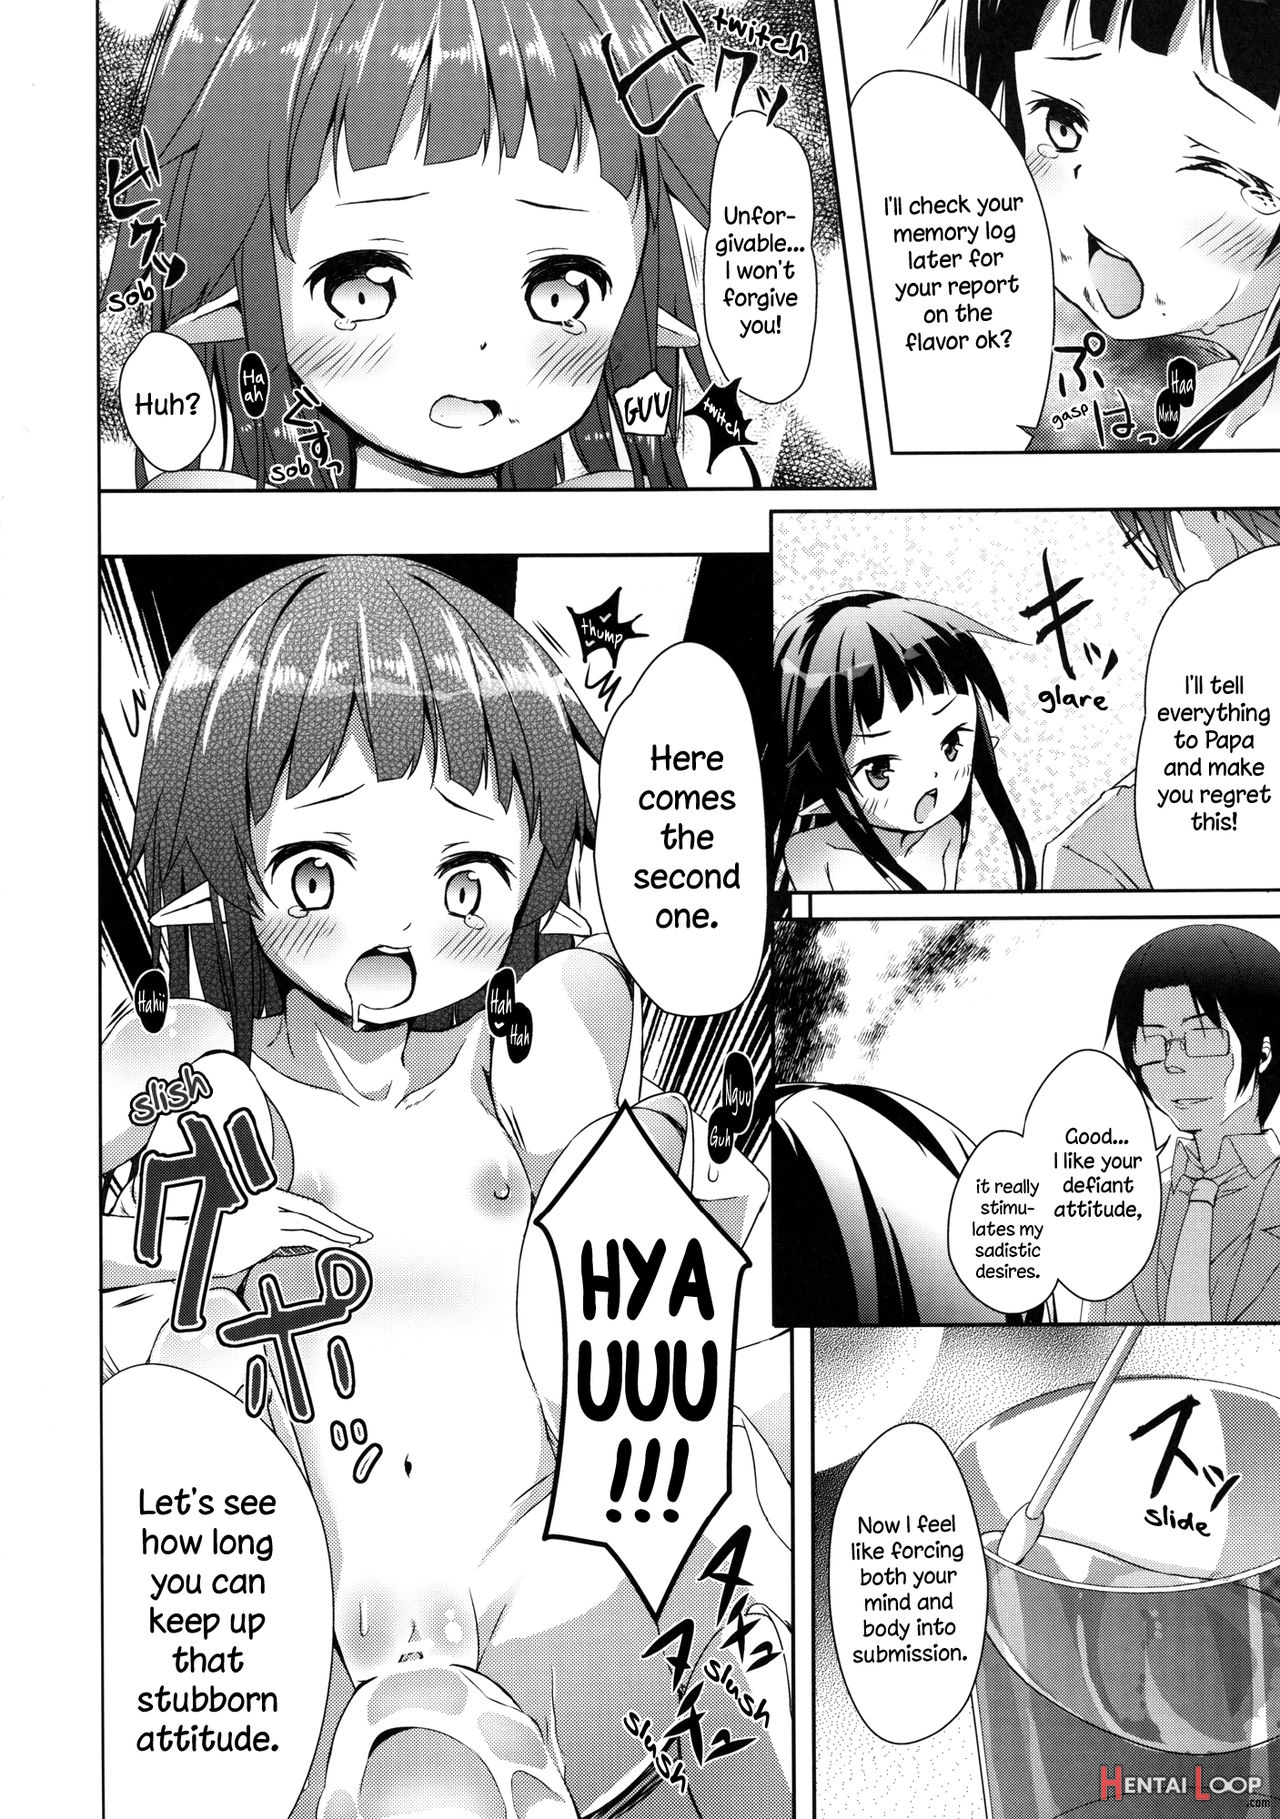 Yui-chan Deformation! page 10